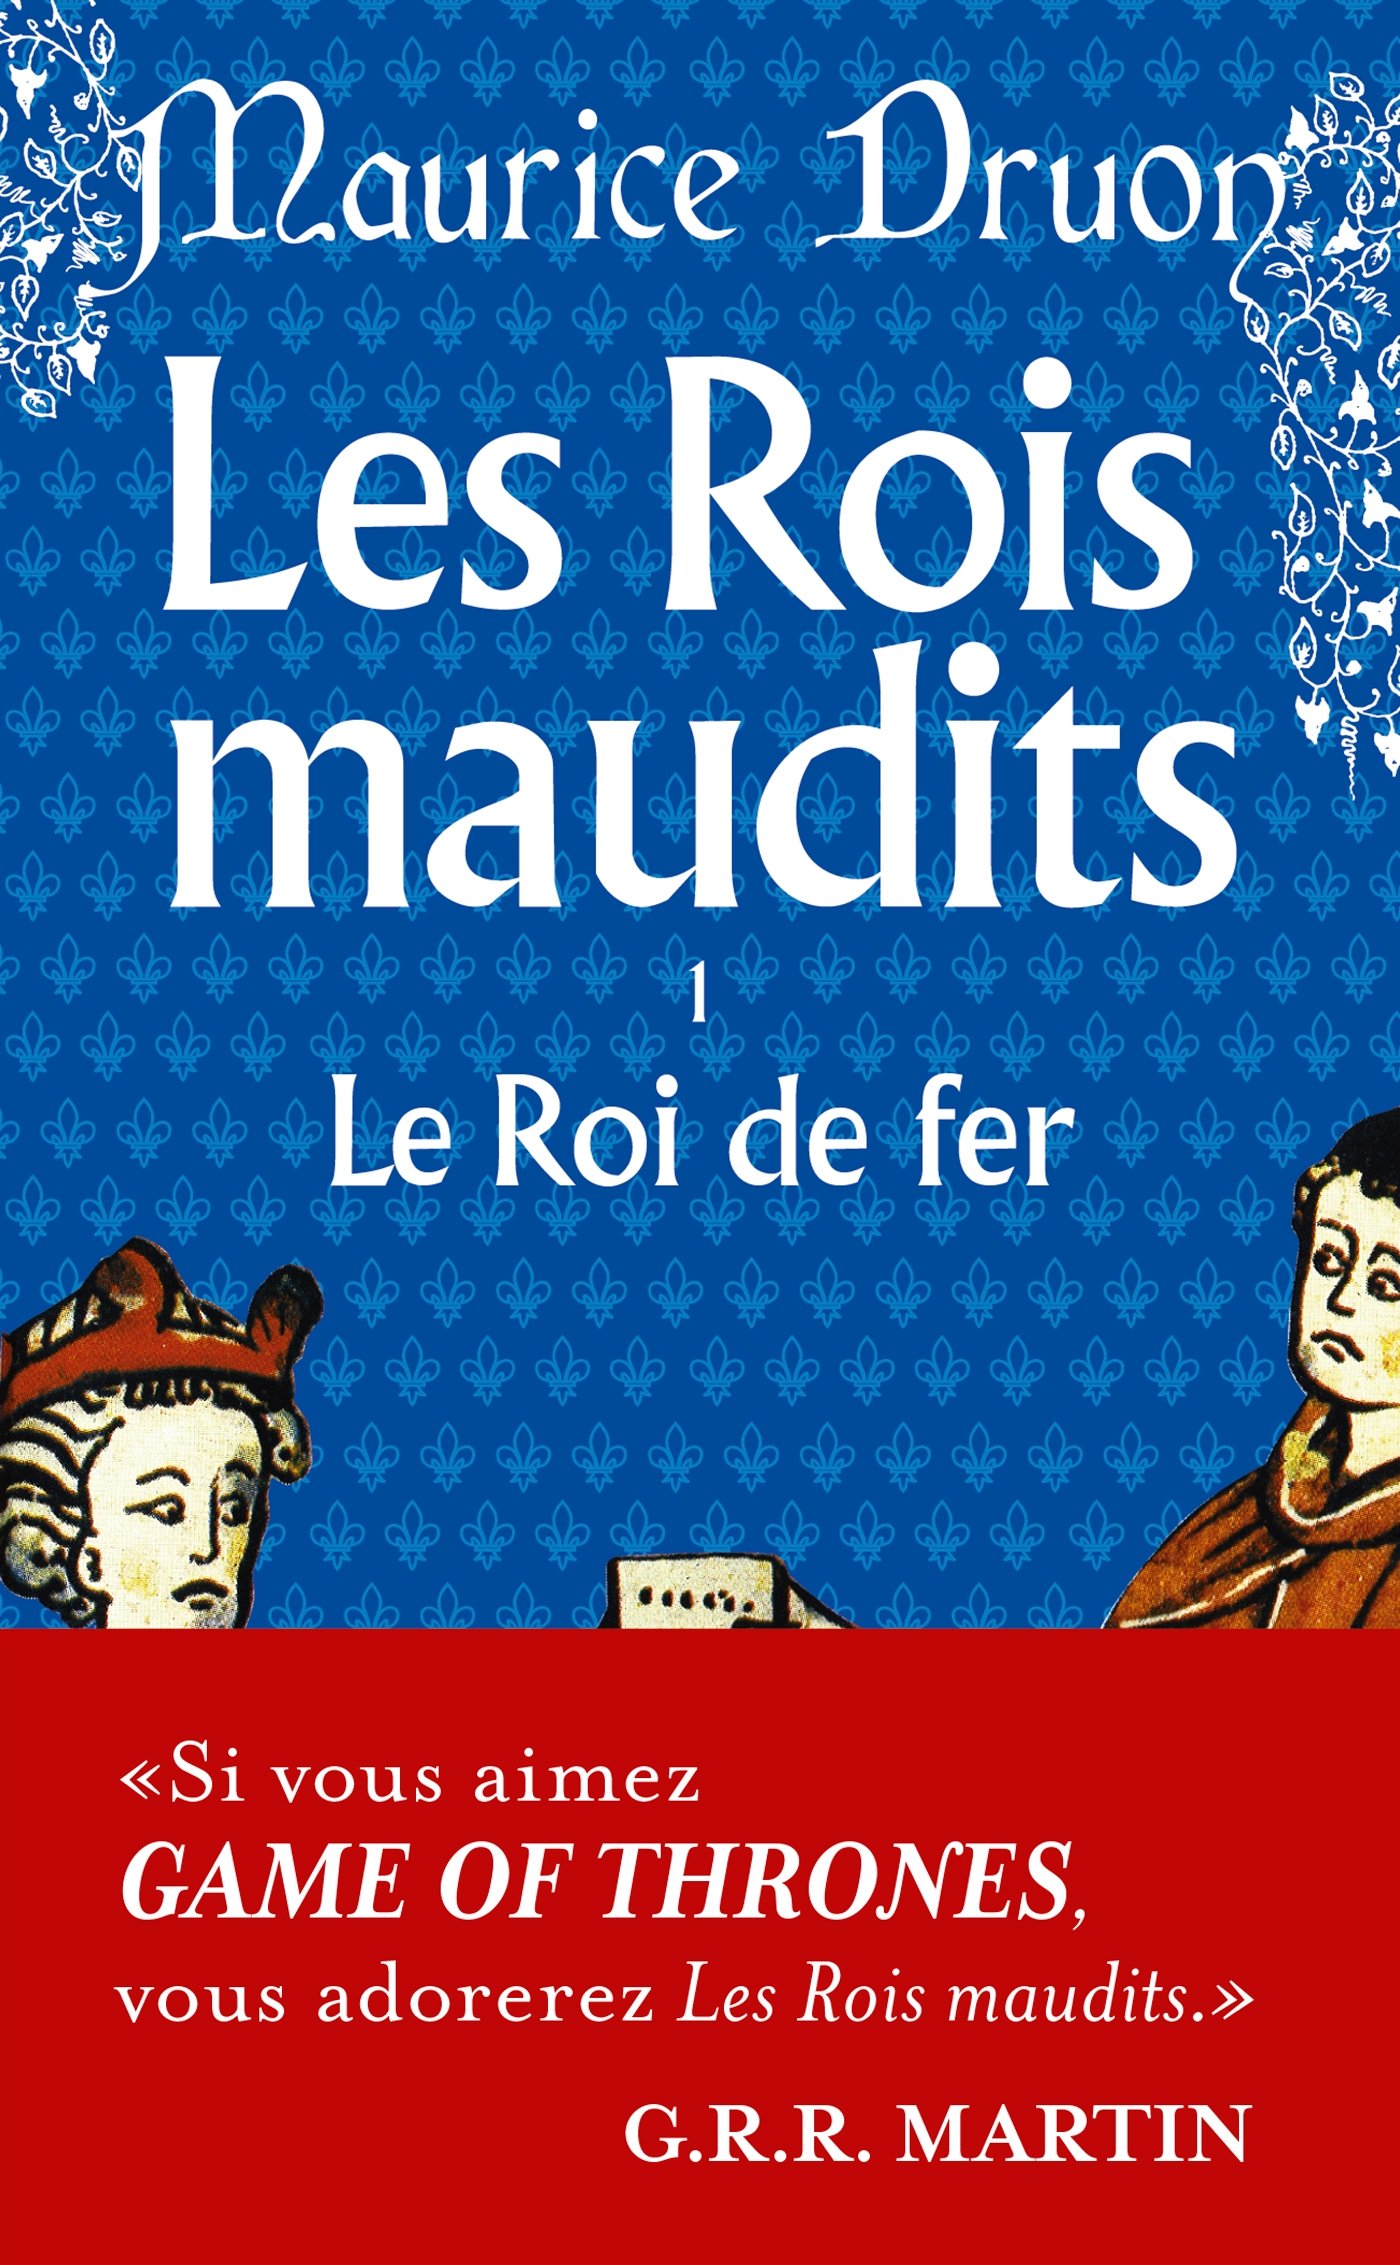 Les rois maudits de Maurice Druon